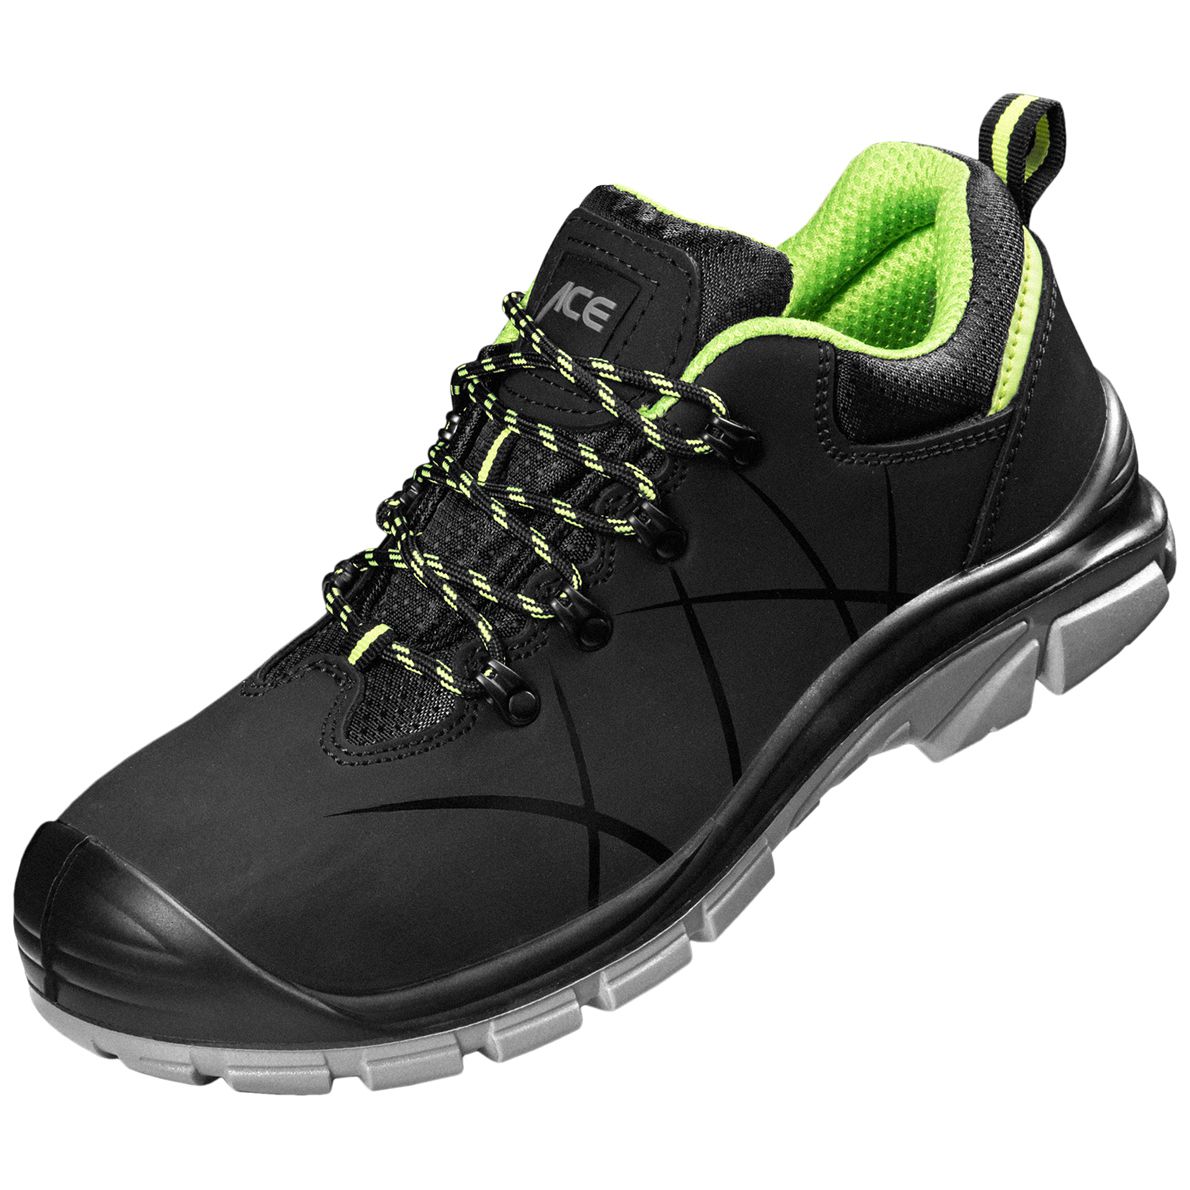 ACE Constructor S3-Arbeits-Sneakers - mit Stahlkappe - Sicherheits-Schuhe für die Arbeit  - Schwarz/Grün - 41